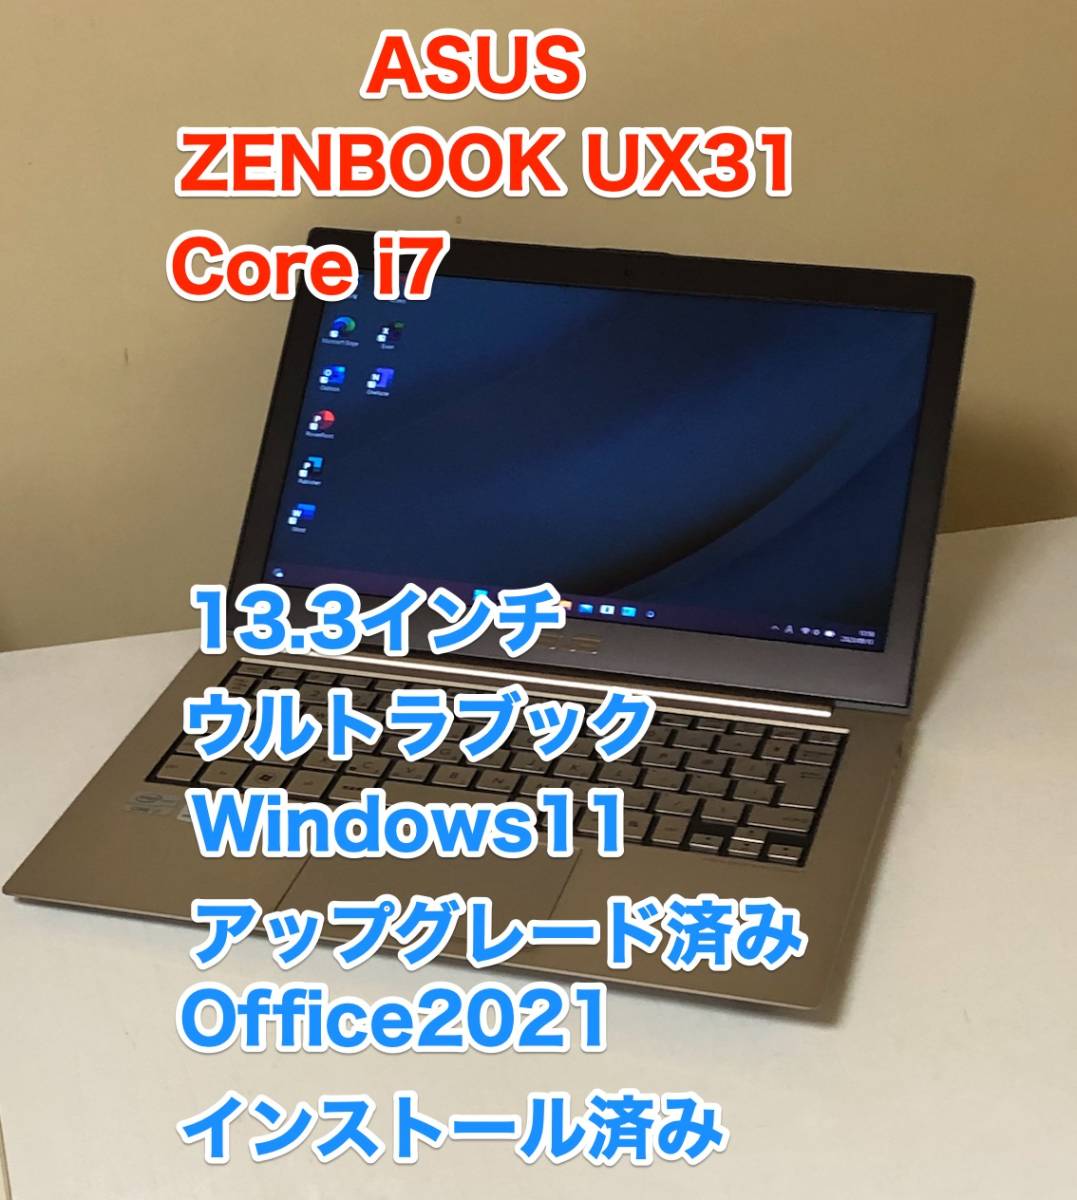 [ быстрое решение ] [ прекрасный товар ] ASUS ZENBOOK UX31 13.3 дюймовый Core i7 Windows 11 выше комплектация Office 2021 тонкий легкий Note PC ②